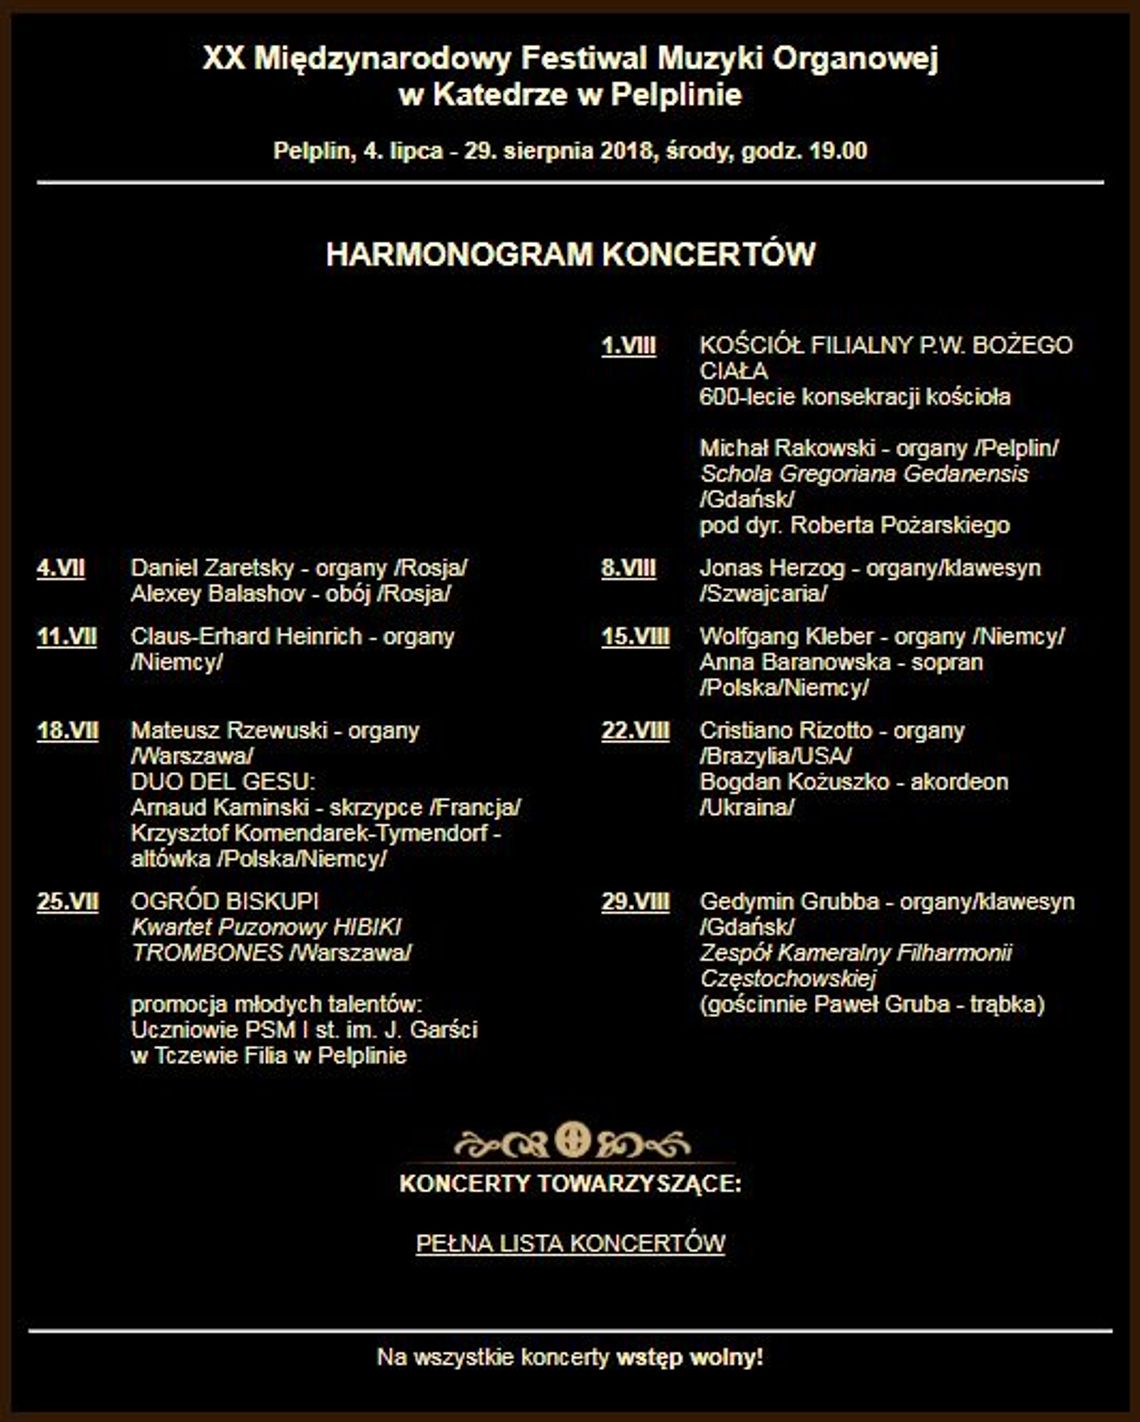 XX Międzynarodowy Festiwal Muzyki Organowej w Pelplinie